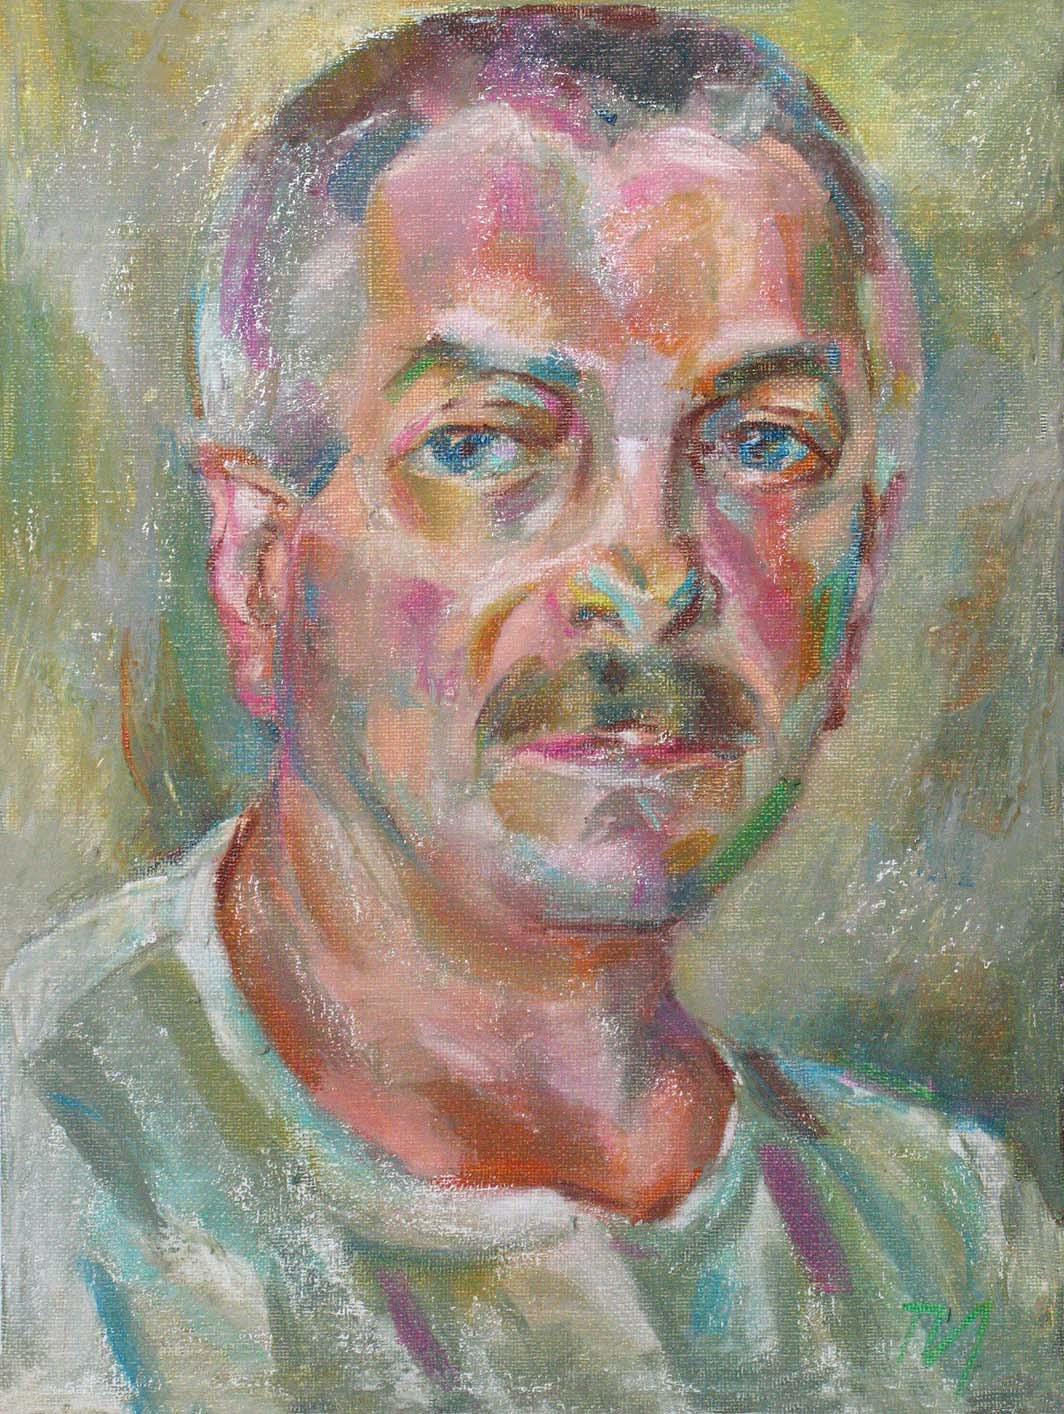 URA, canvas, oil pastel, 35  27 cm, 2010



